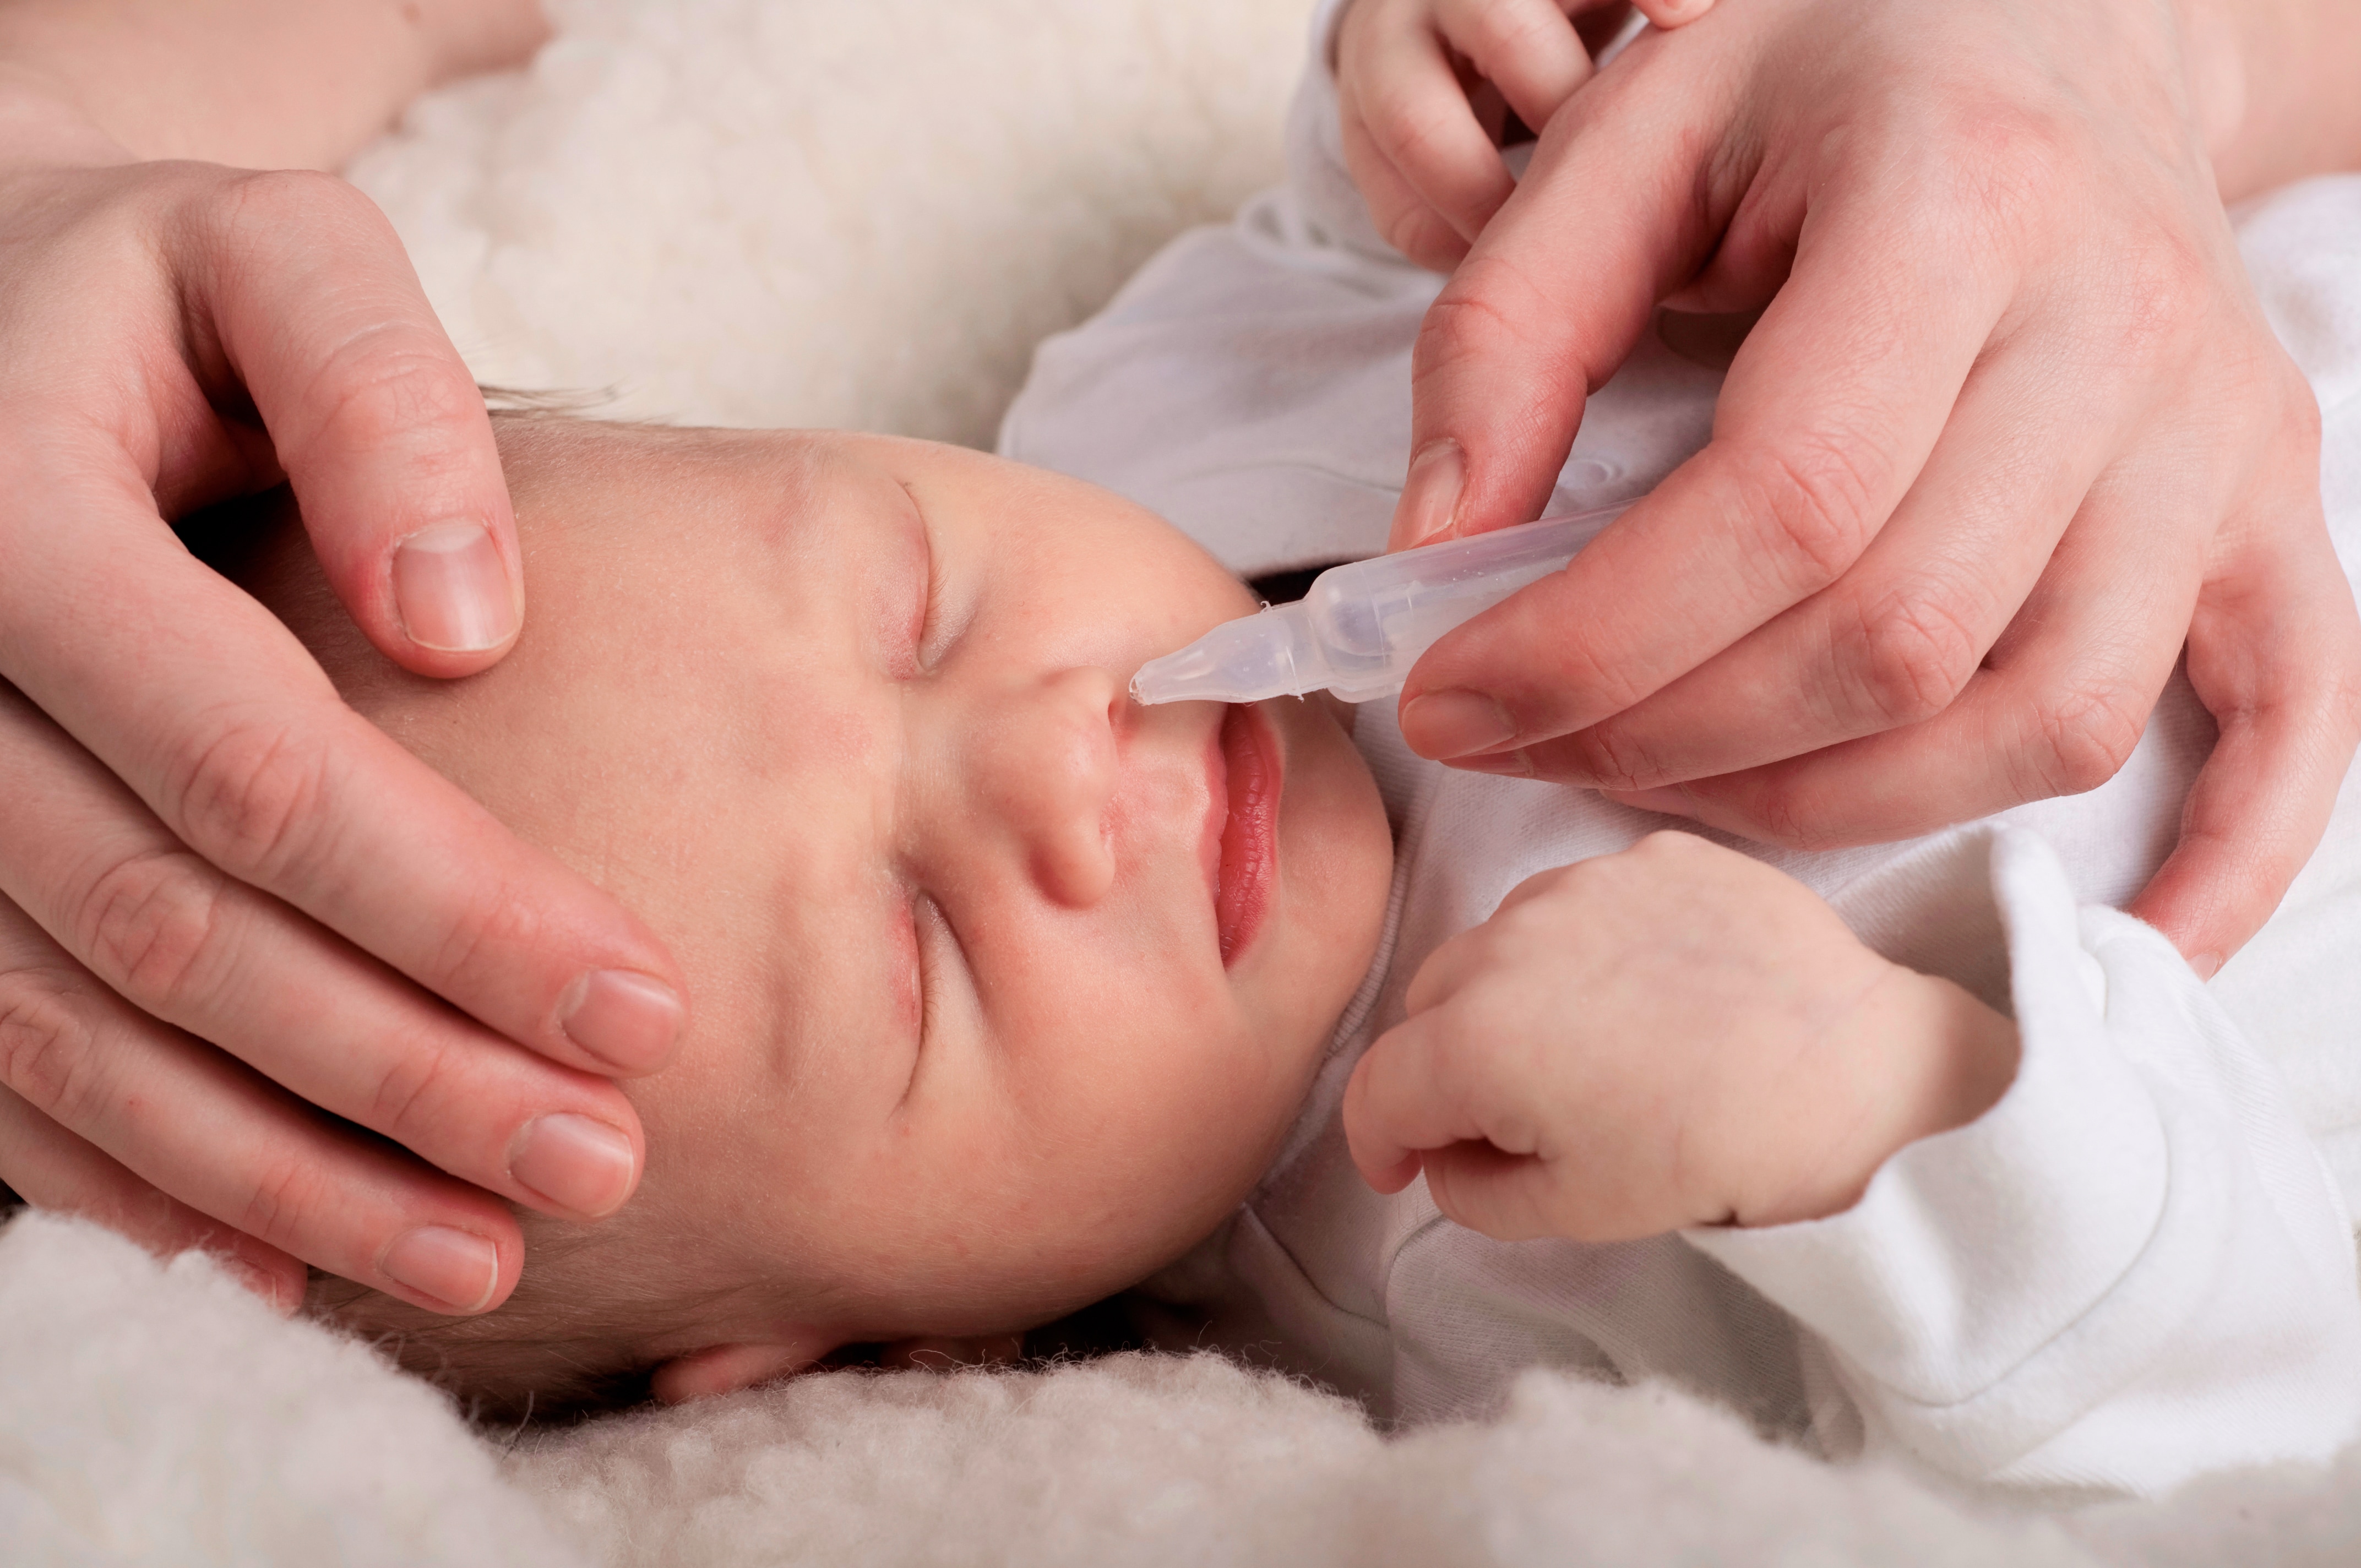 Как помочь малышу с заложенным носиком: Секреты здорового дыхания